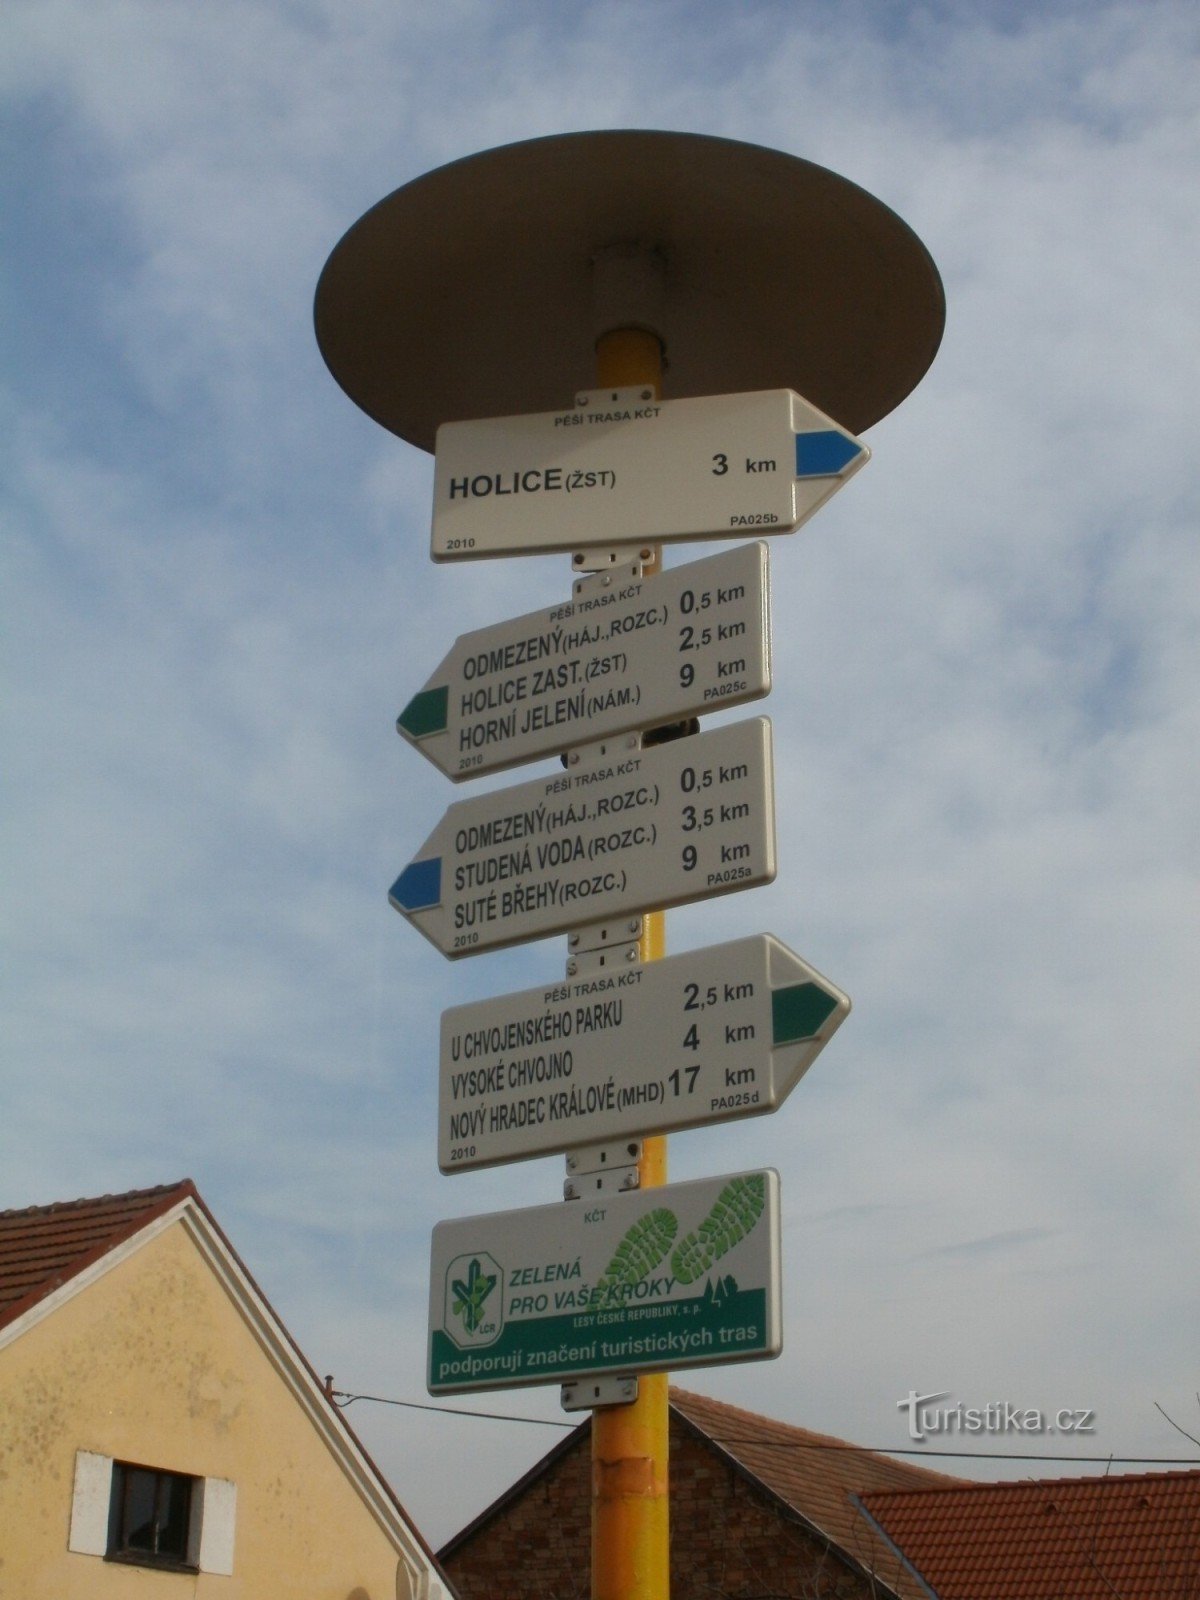 Pobežovice tourist crossroads